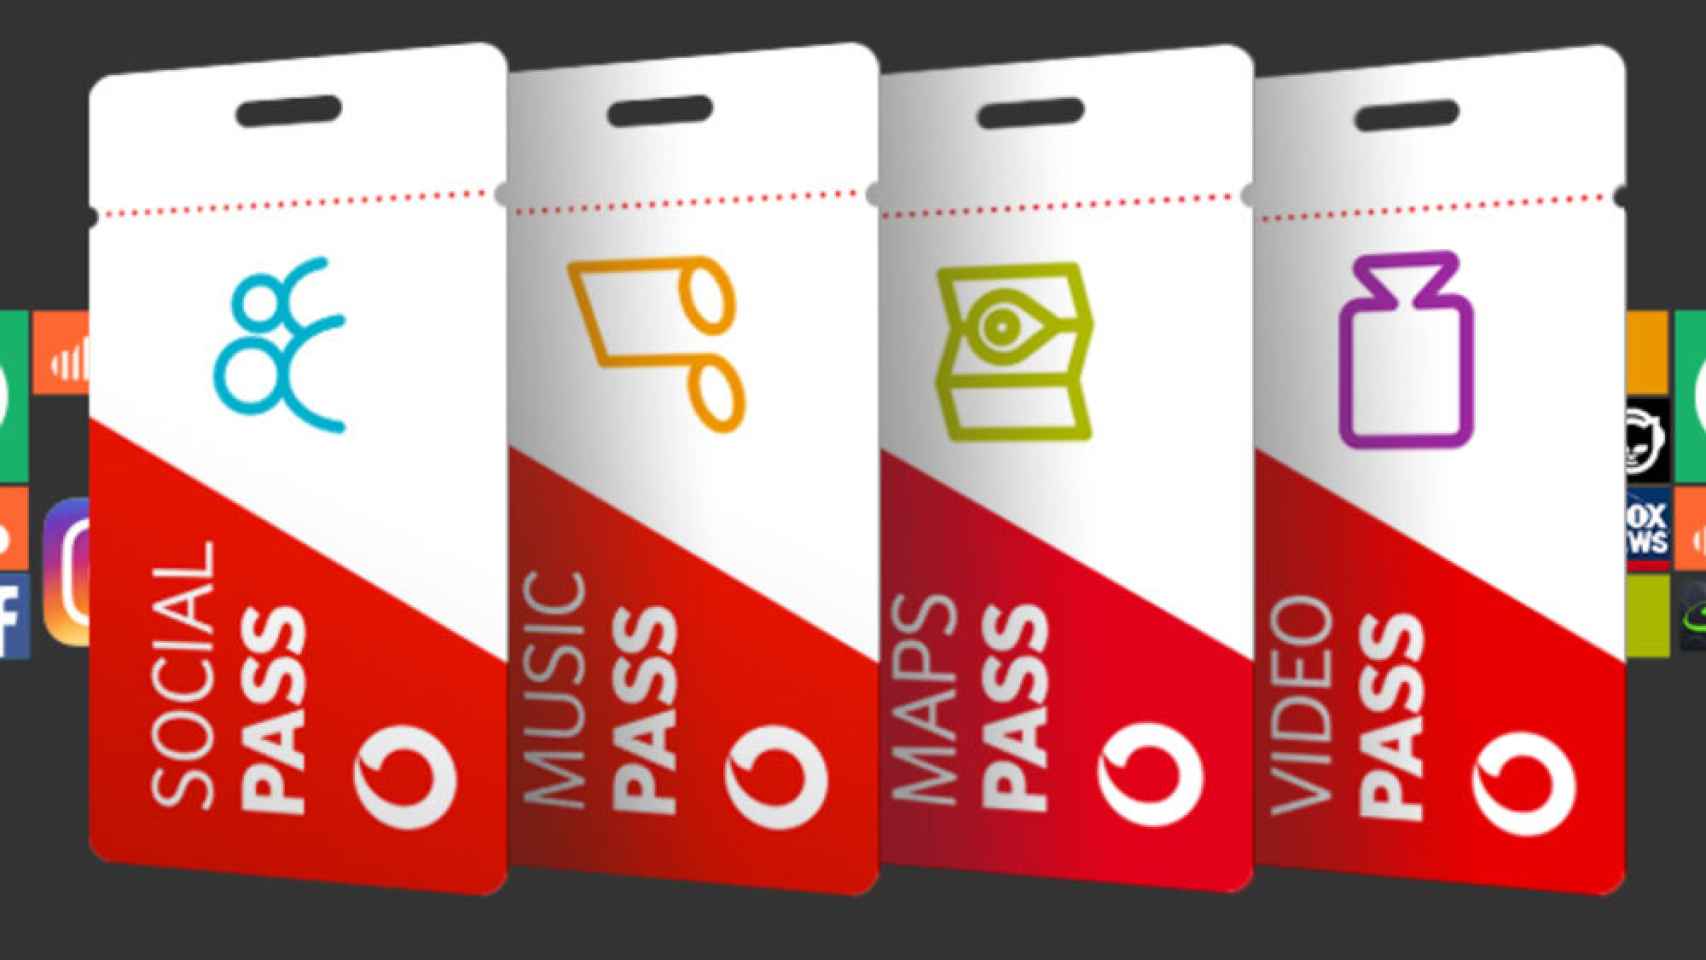 Las tarifas planas temáticas de Vodafone por 1 euro al mes